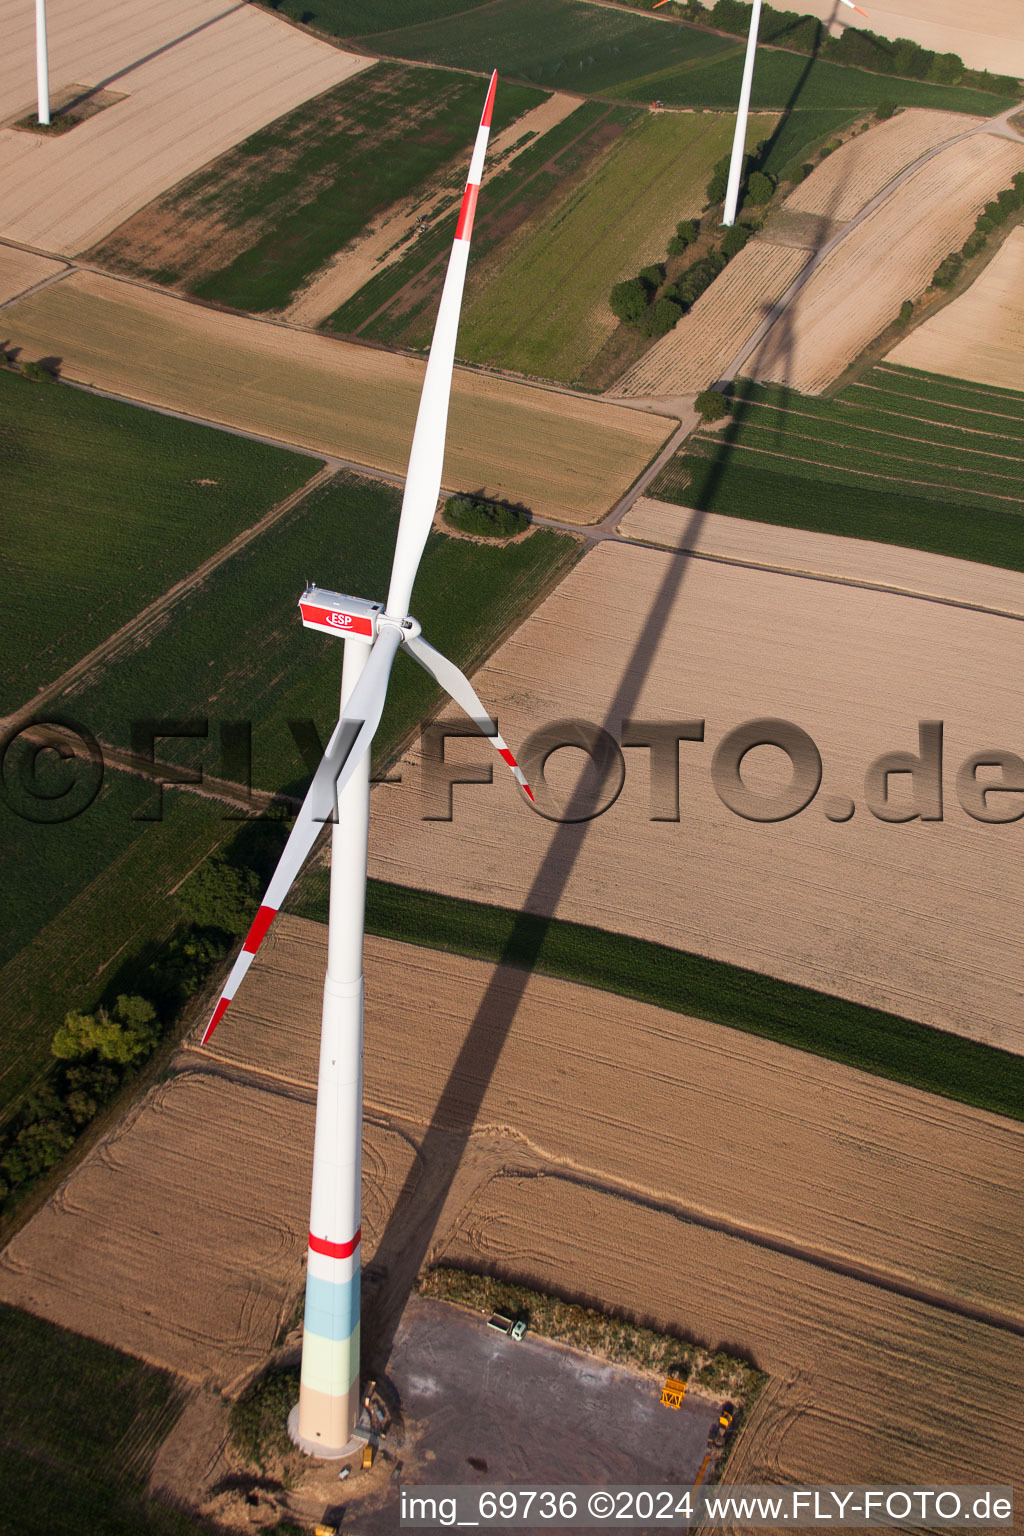 Windparkbau in Offenbach an der Queich im Bundesland Rheinland-Pfalz, Deutschland von der Drohne aus gesehen